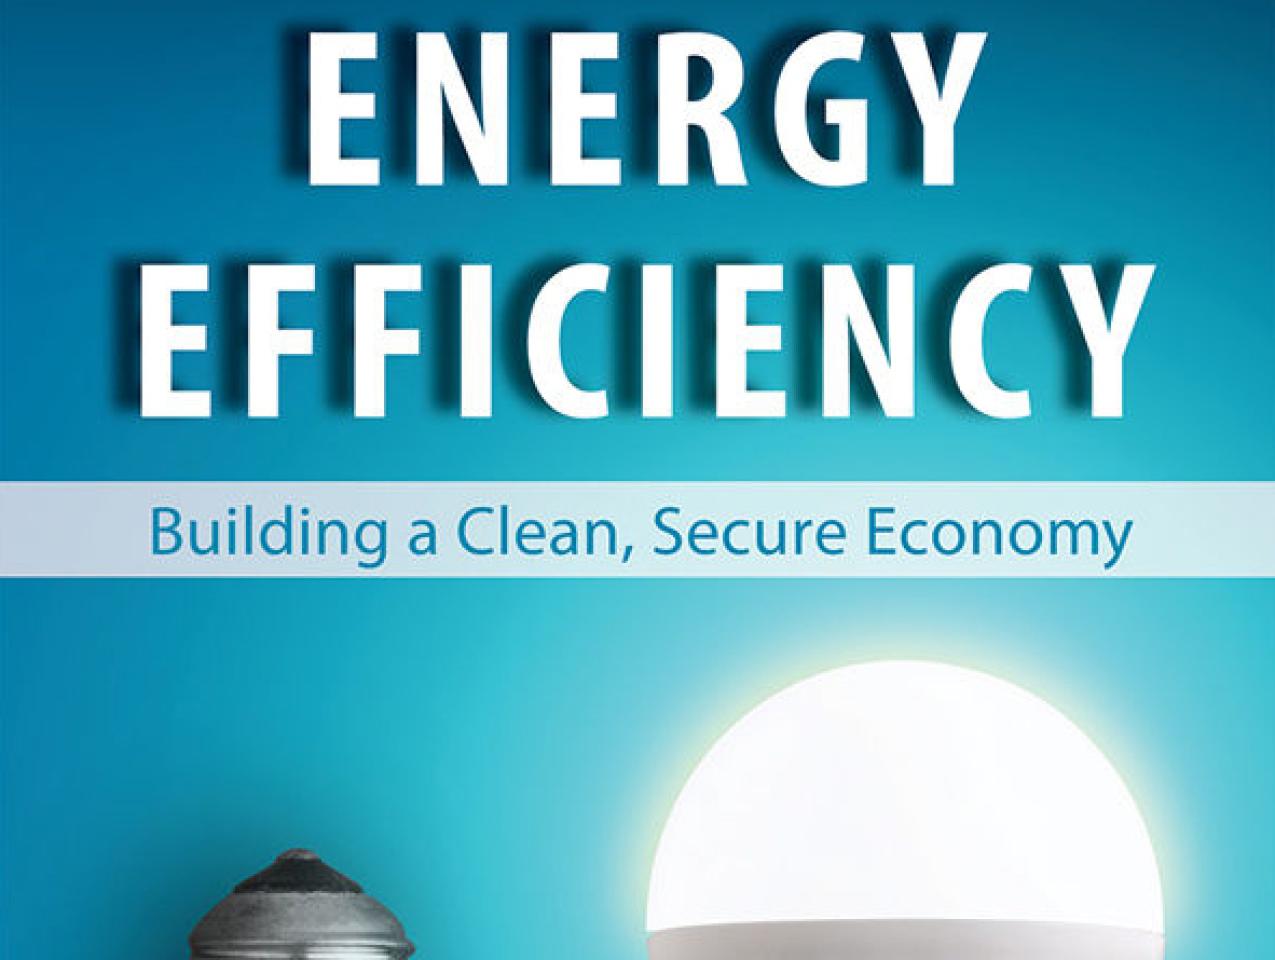 Energy Efficiency by James Sweeney